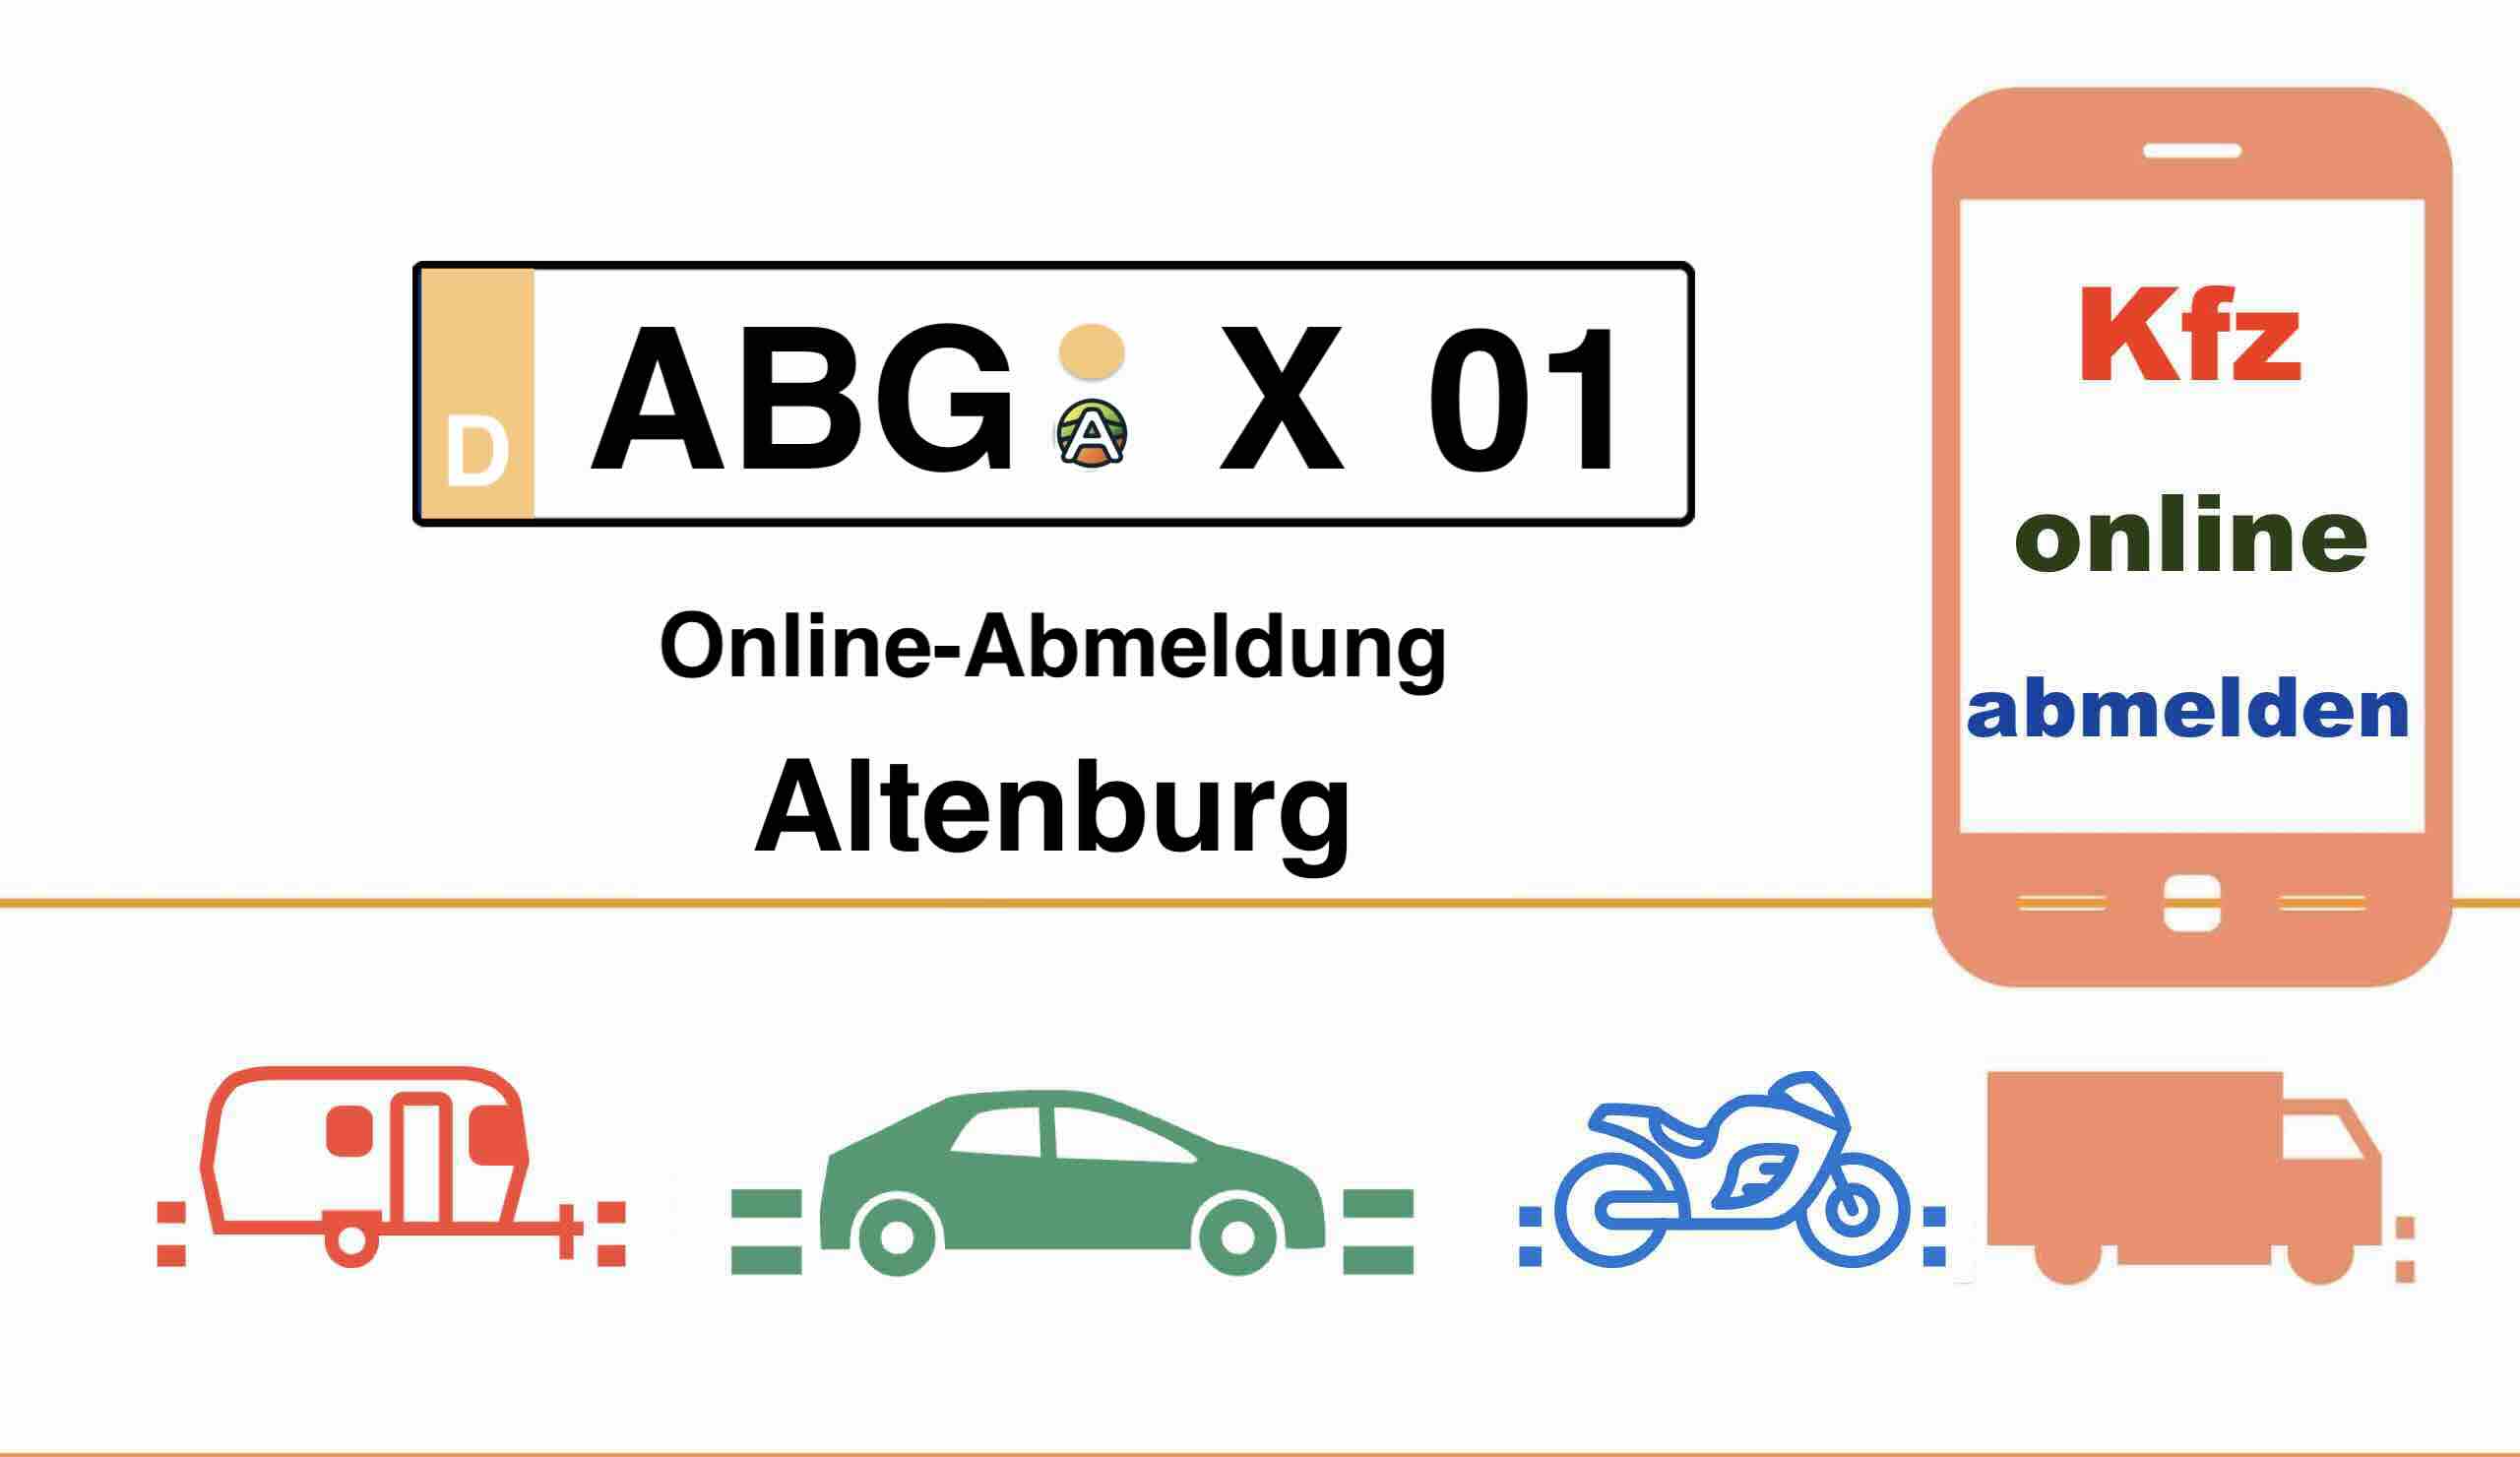 Online-Abmeldung in Altenburg 